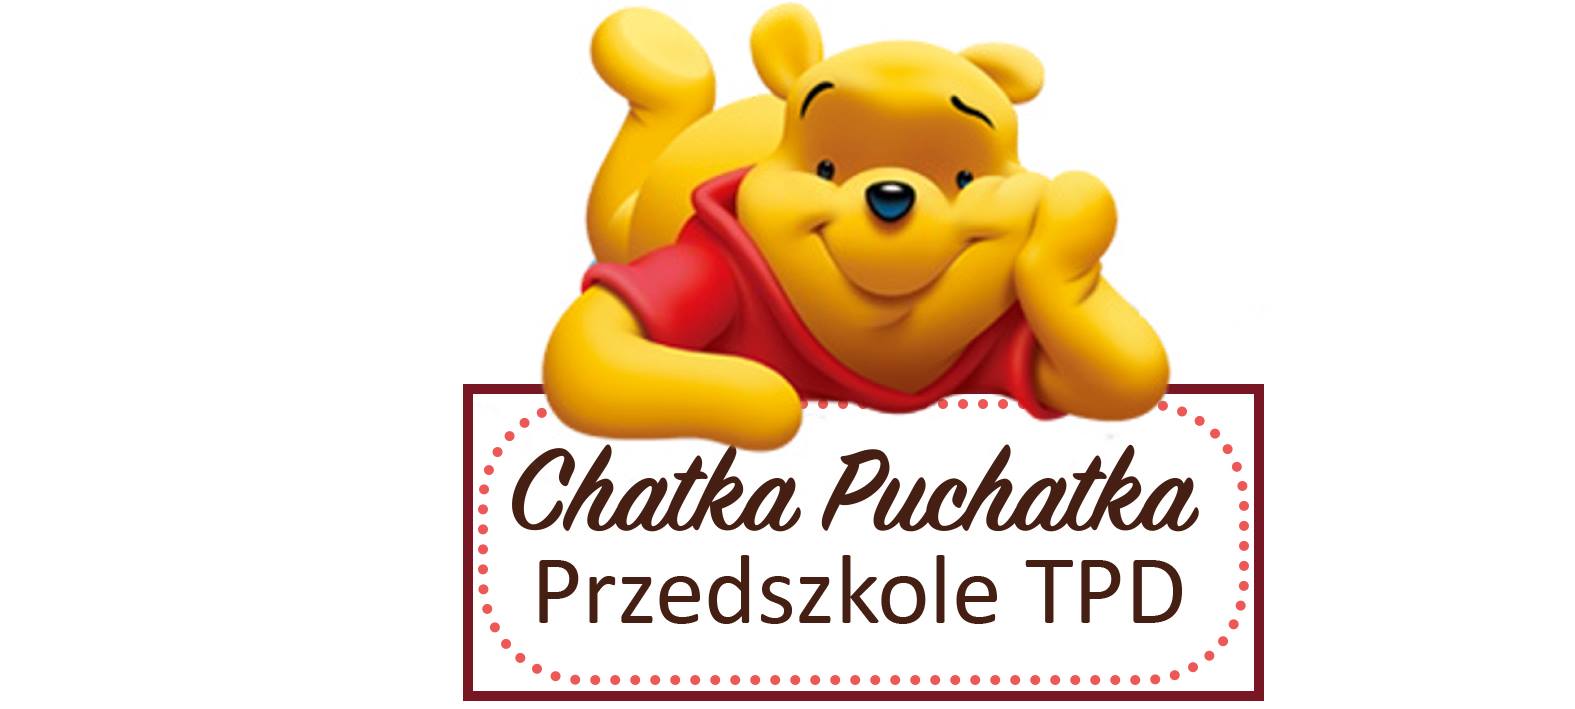 You are currently viewing Rekrutacja na stanowisko Dyrektora Przedszkola TPD Chatka Puchatka w Krakowie